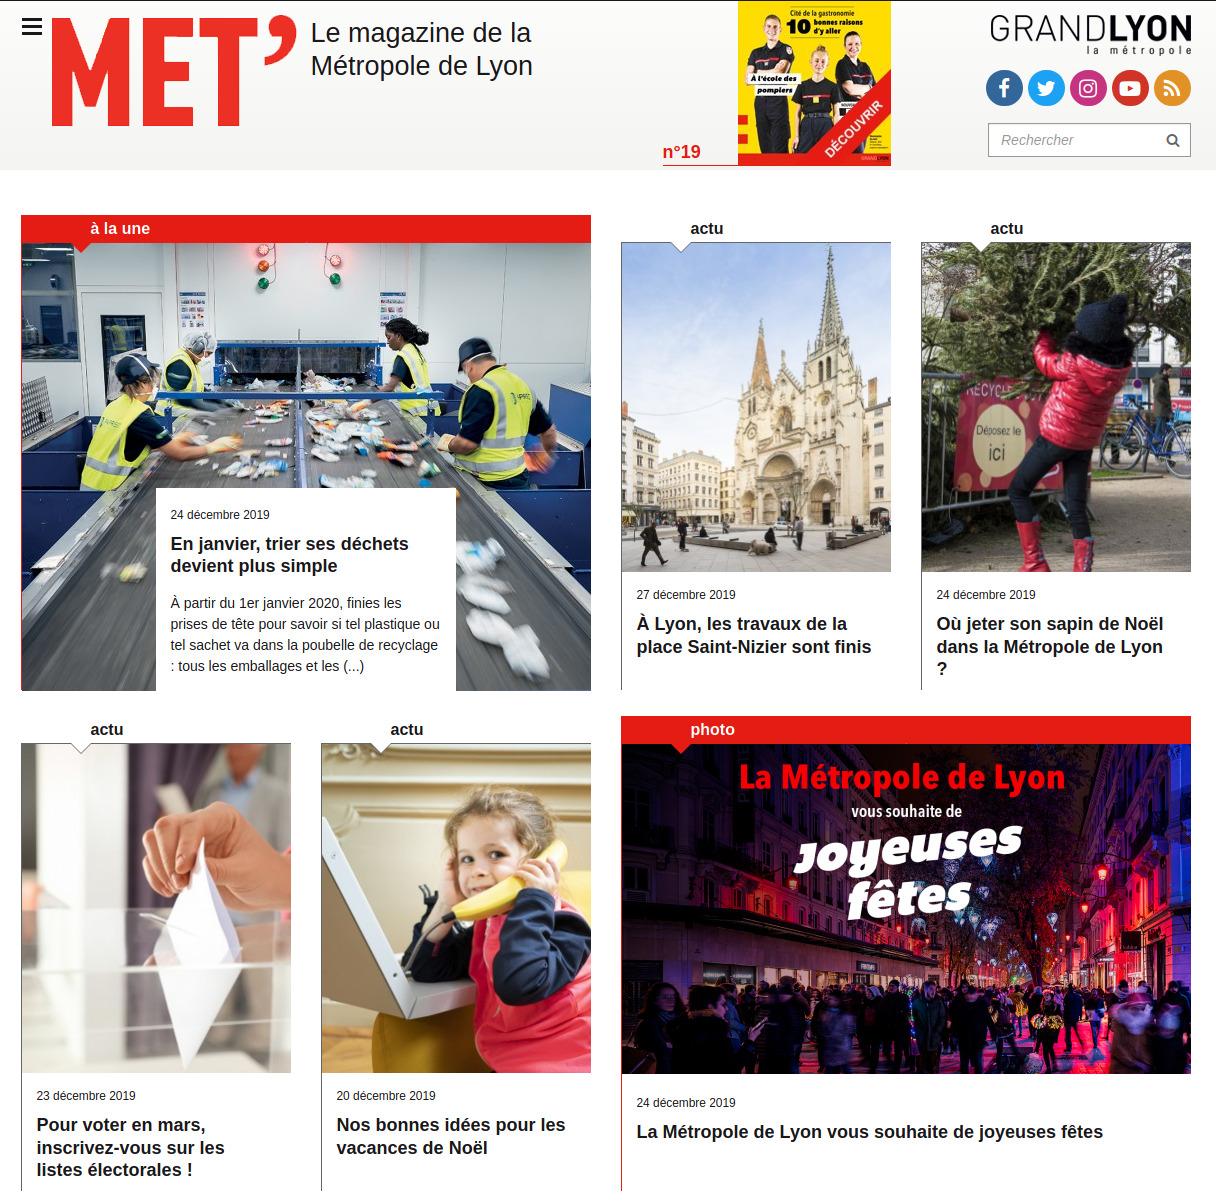 Page d'accueil du site MET' du Grand Lyon